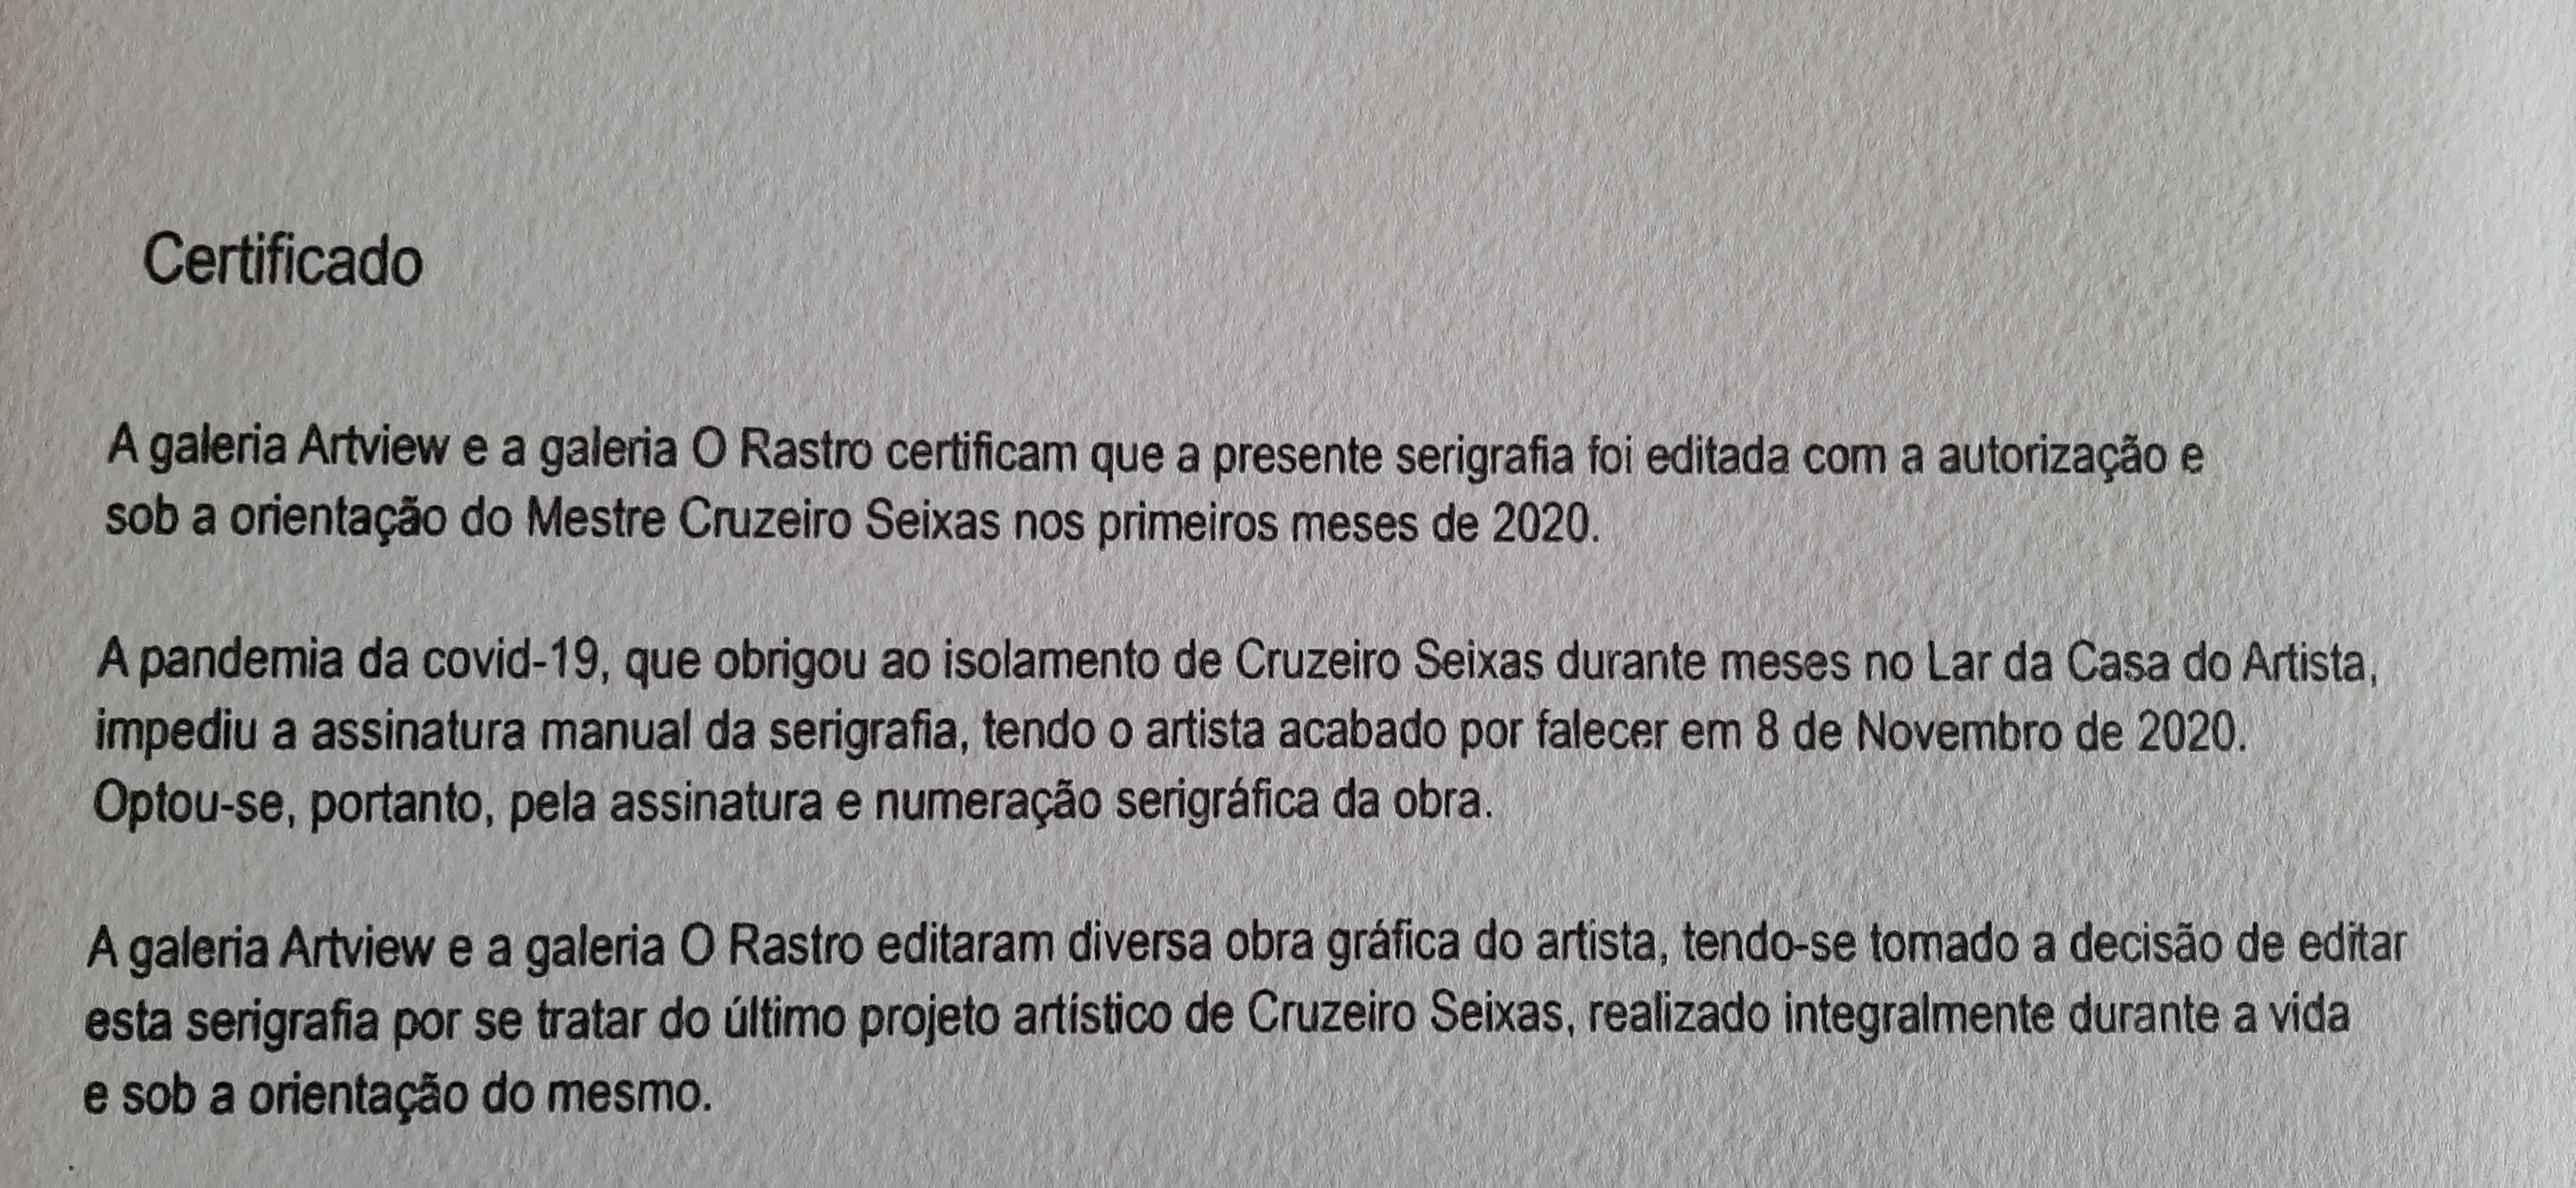 Cruzeiro Seixas - serigrafia